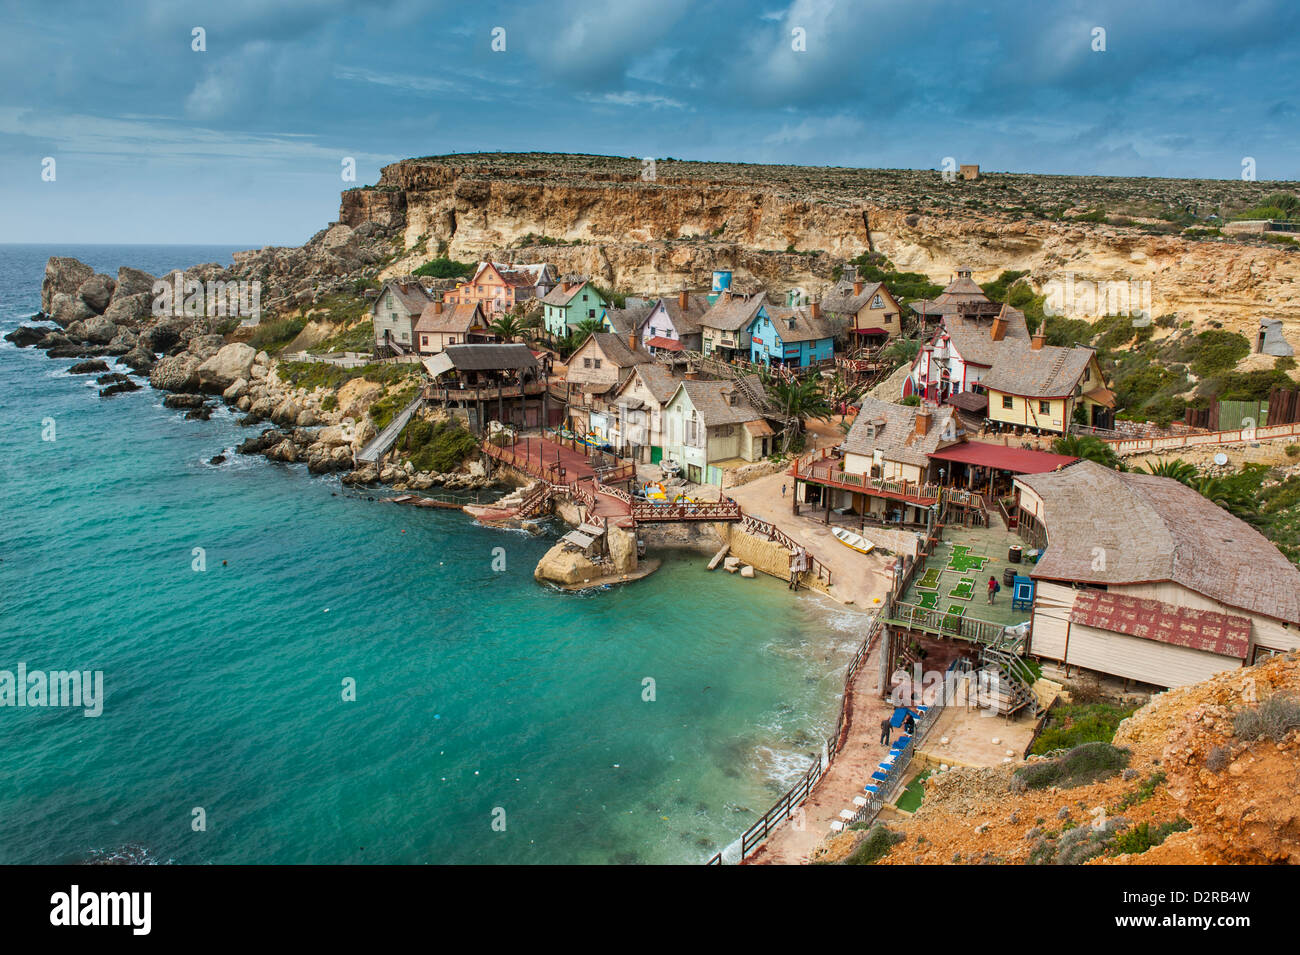 Popeye village, former movie set and now amusement park, Malta, Mediterranean, Europe Stock Photo